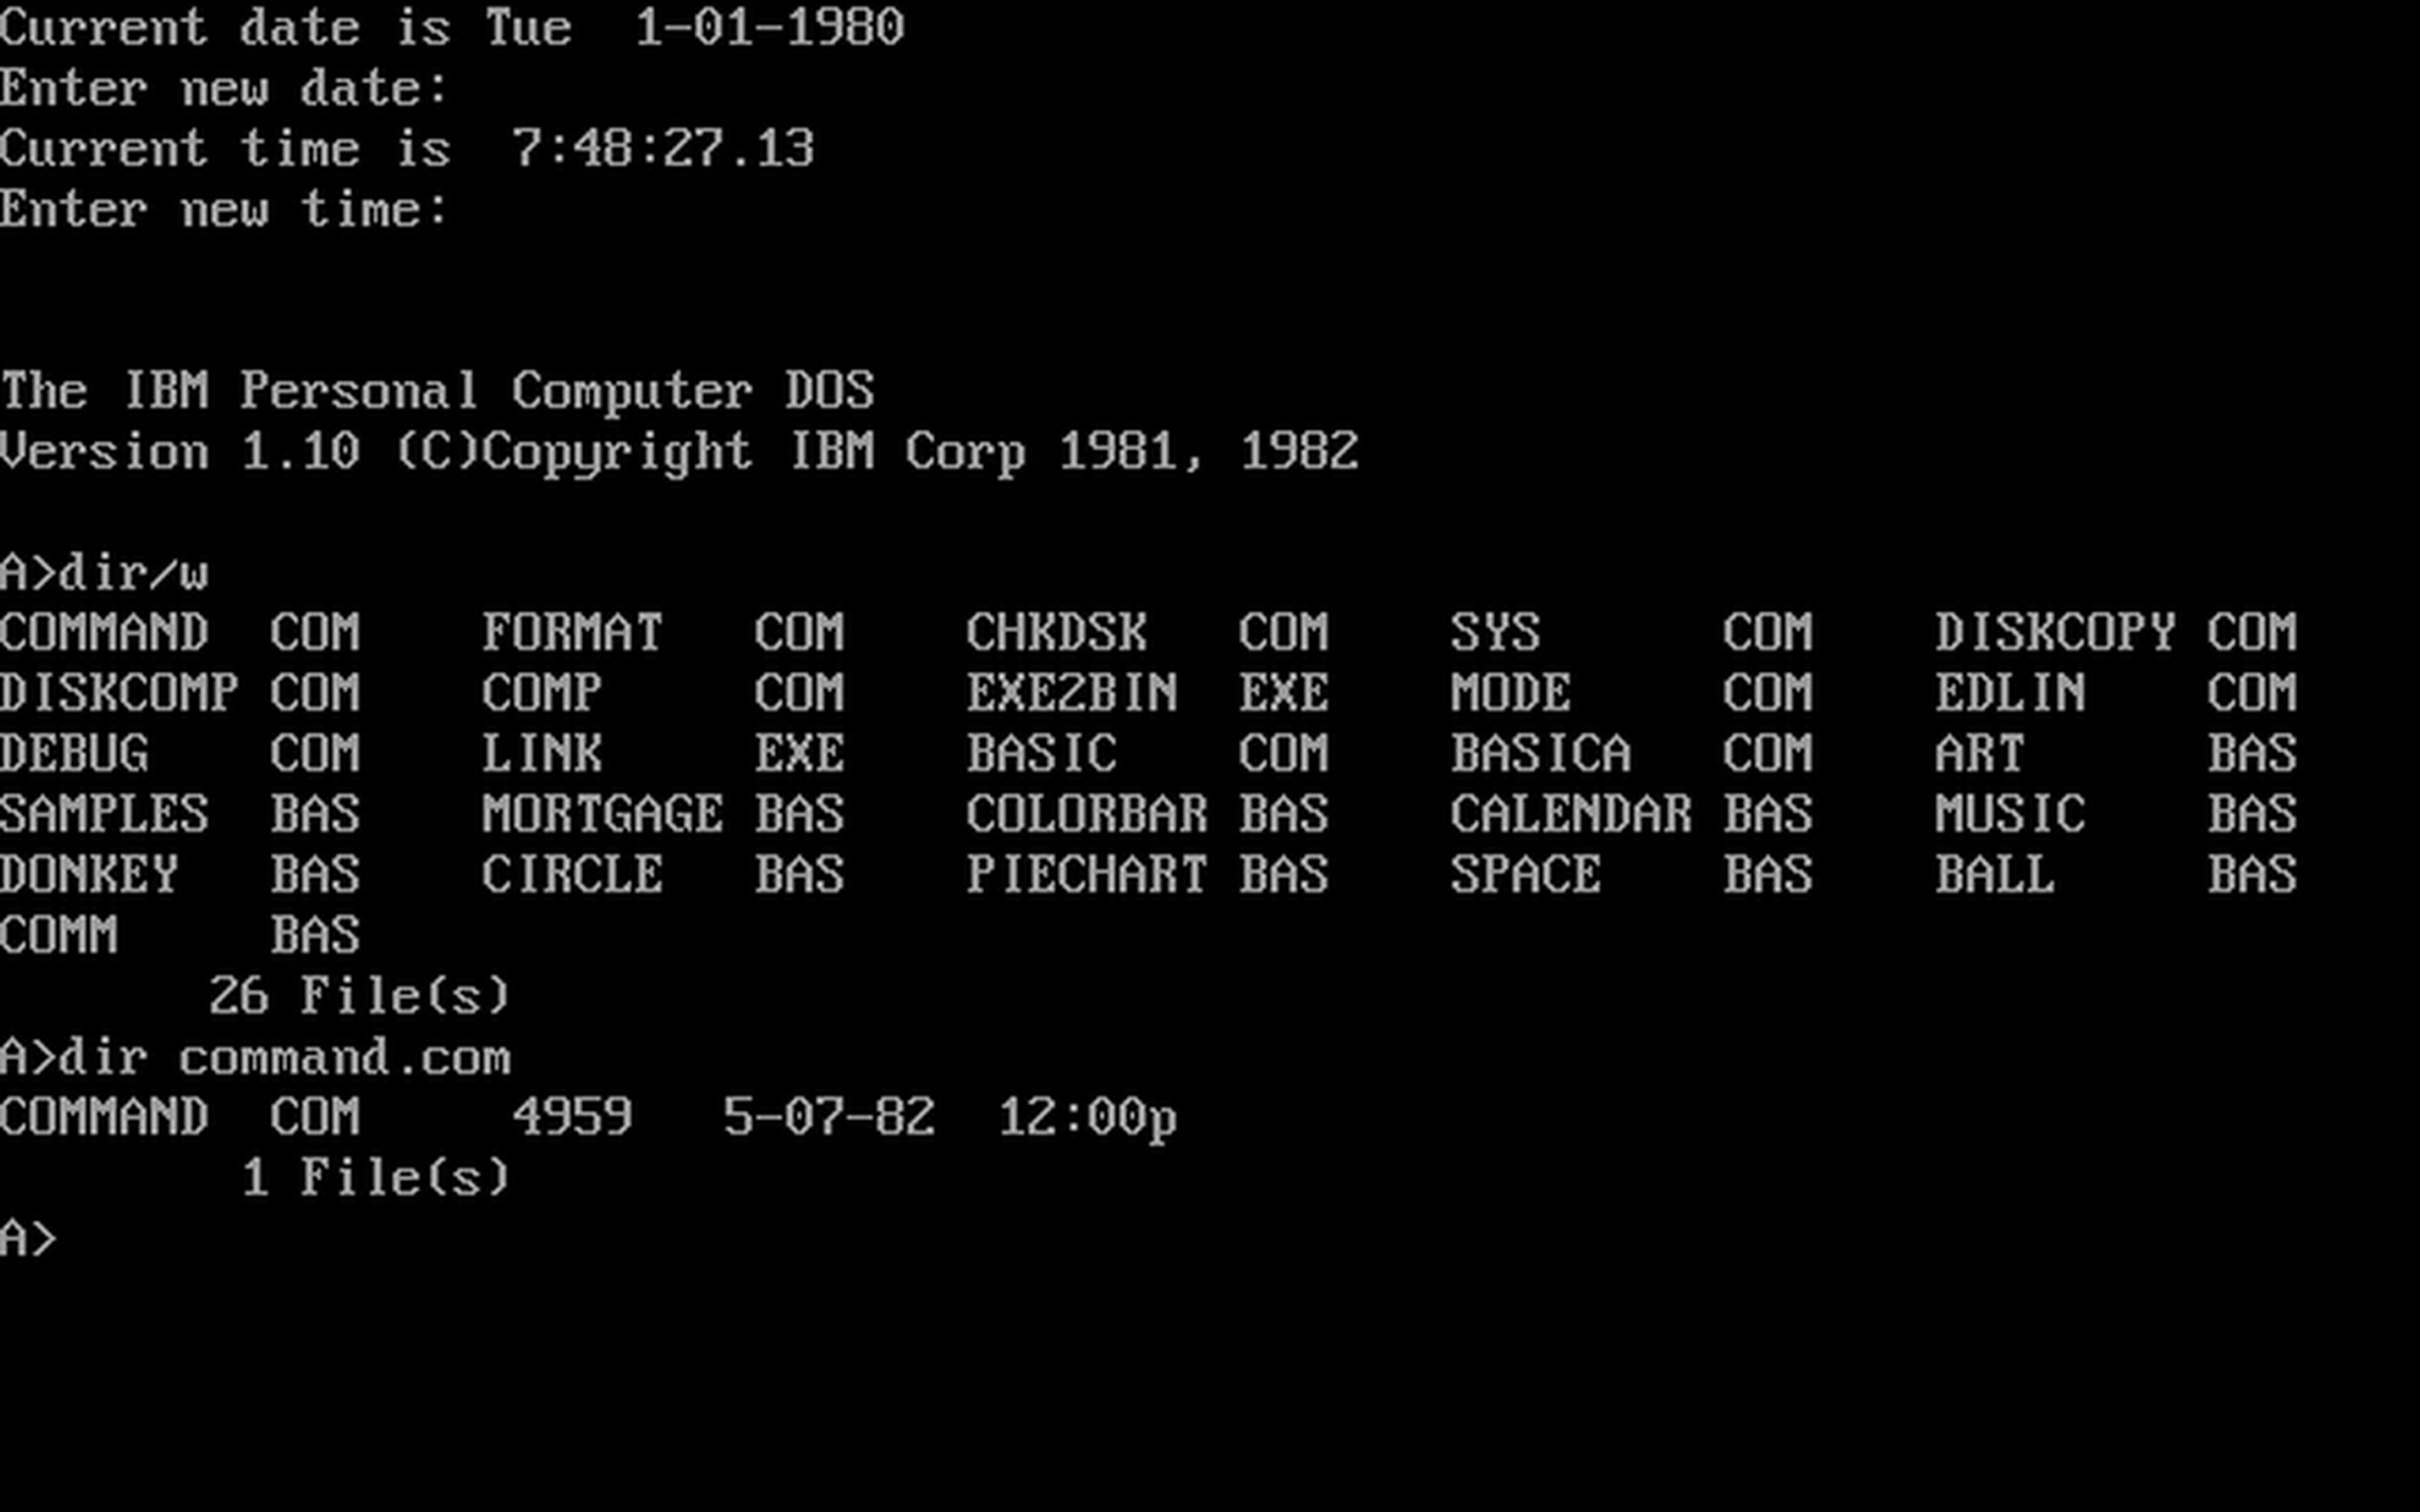 Microsoft cuelga el código fuente del mítico MS-DOS en GitHub